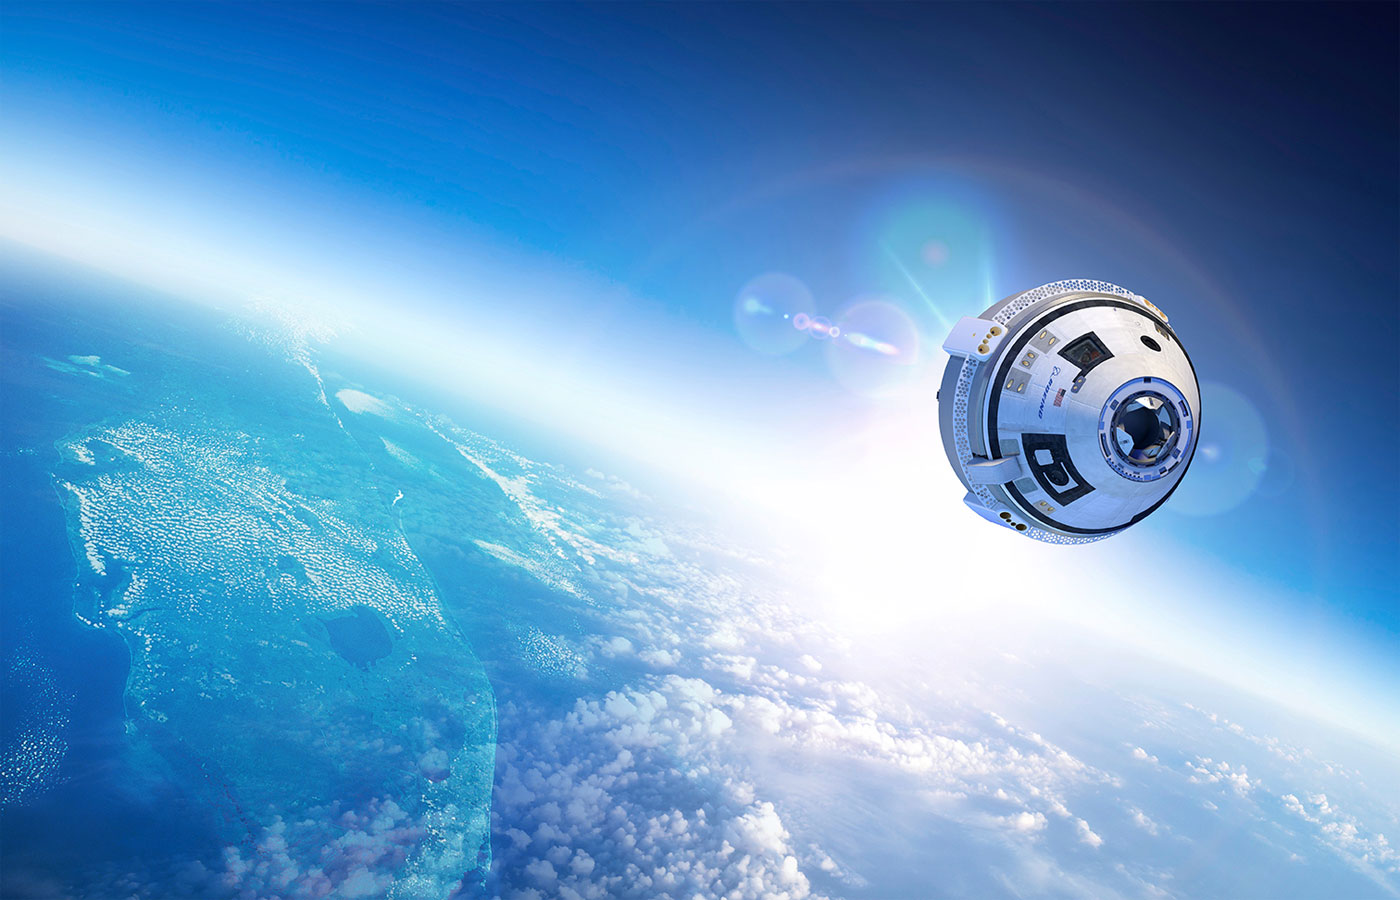 Après Lockheed Martin, Boeing est exclu du deuxième contrat de ravitaillement en fret de la Station spatiale internationale (ISS) pour la période 2018-2024. Ici, la capsule CST-100 Starliner de Boeing, sélectionnée pour transporter des astronautes de la Nasa. © Boeing